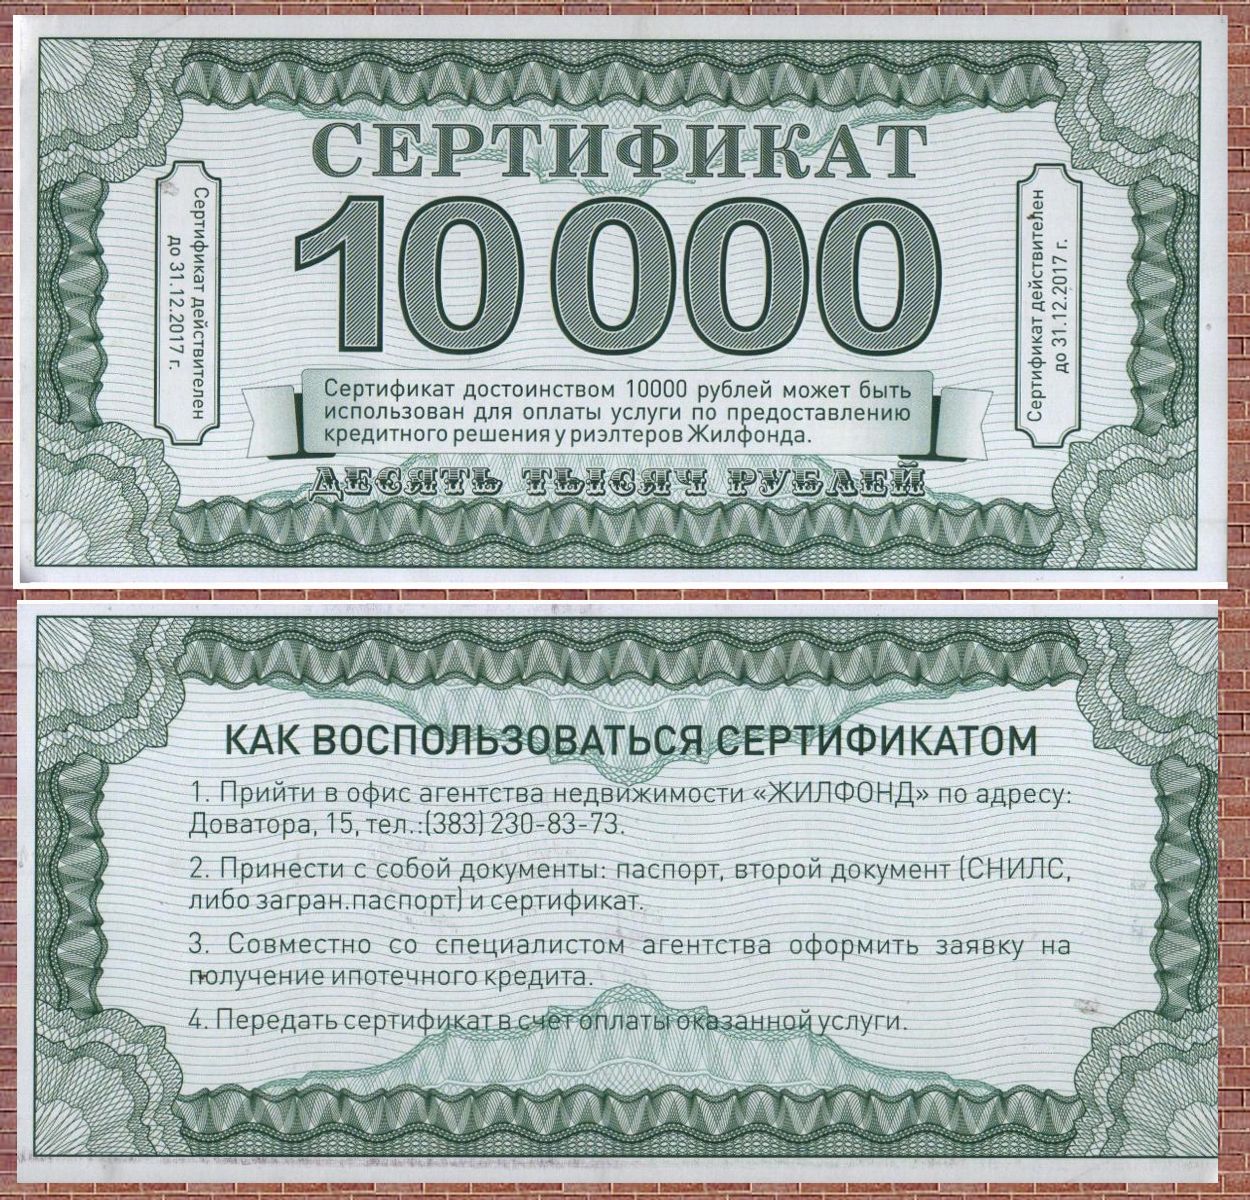 Сертификат на миллион рублей. Сертификат на 10 тысяч. Денежный сертификат на 10000. Подарочный сертификат на 10000 рублей. Сертификат на 10000 рублей.